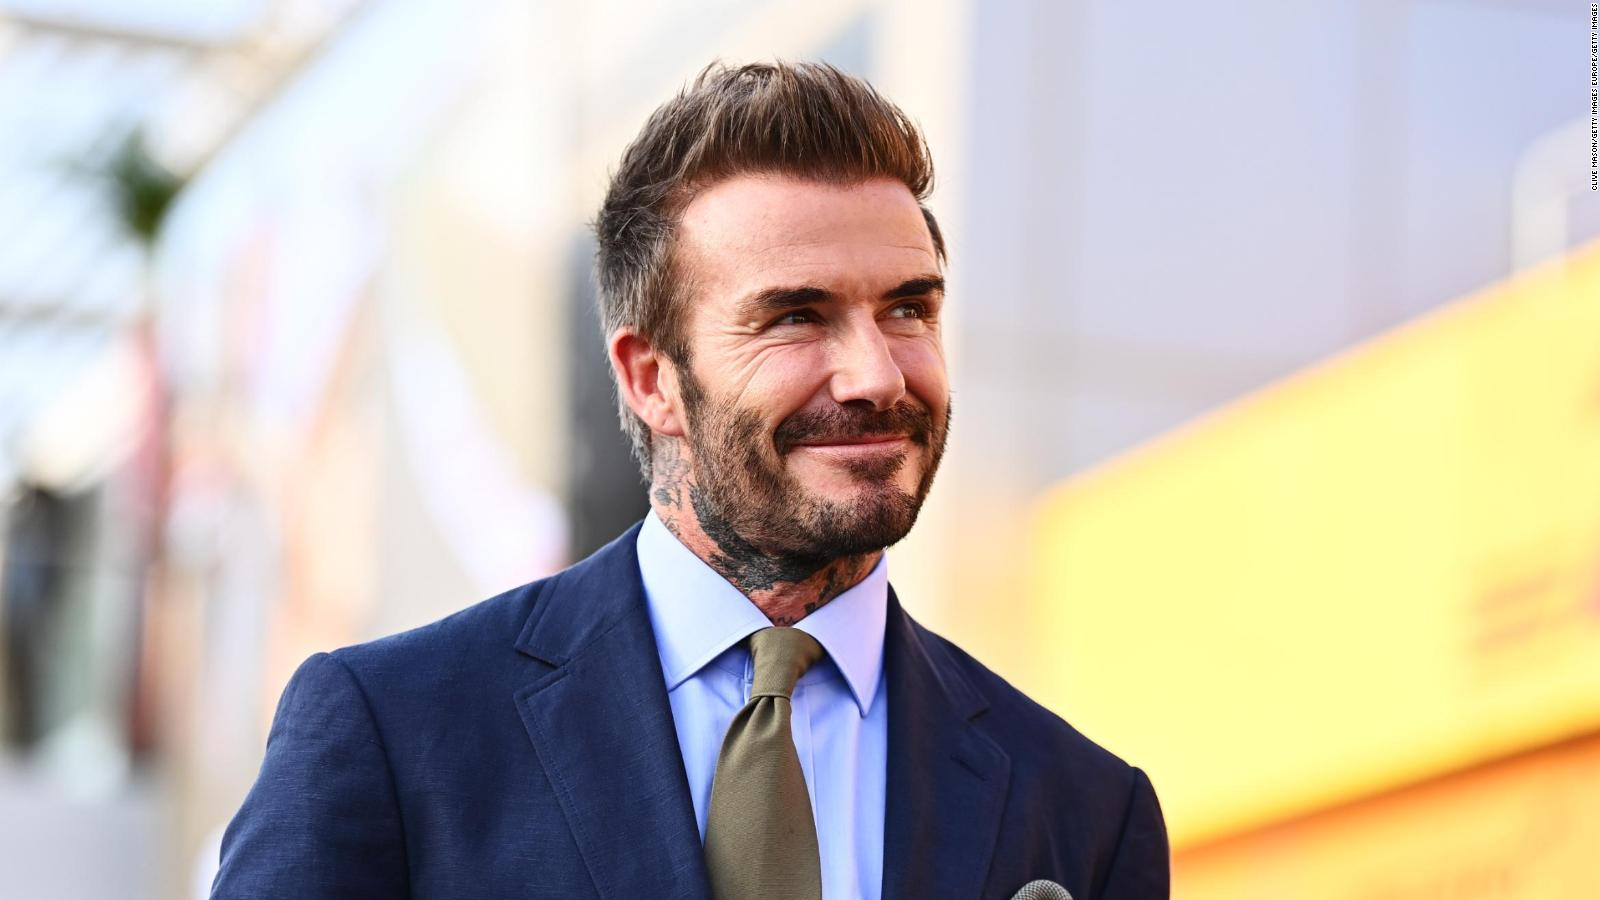 Divertida foto de David Beckham en ropa interior se hizo viral